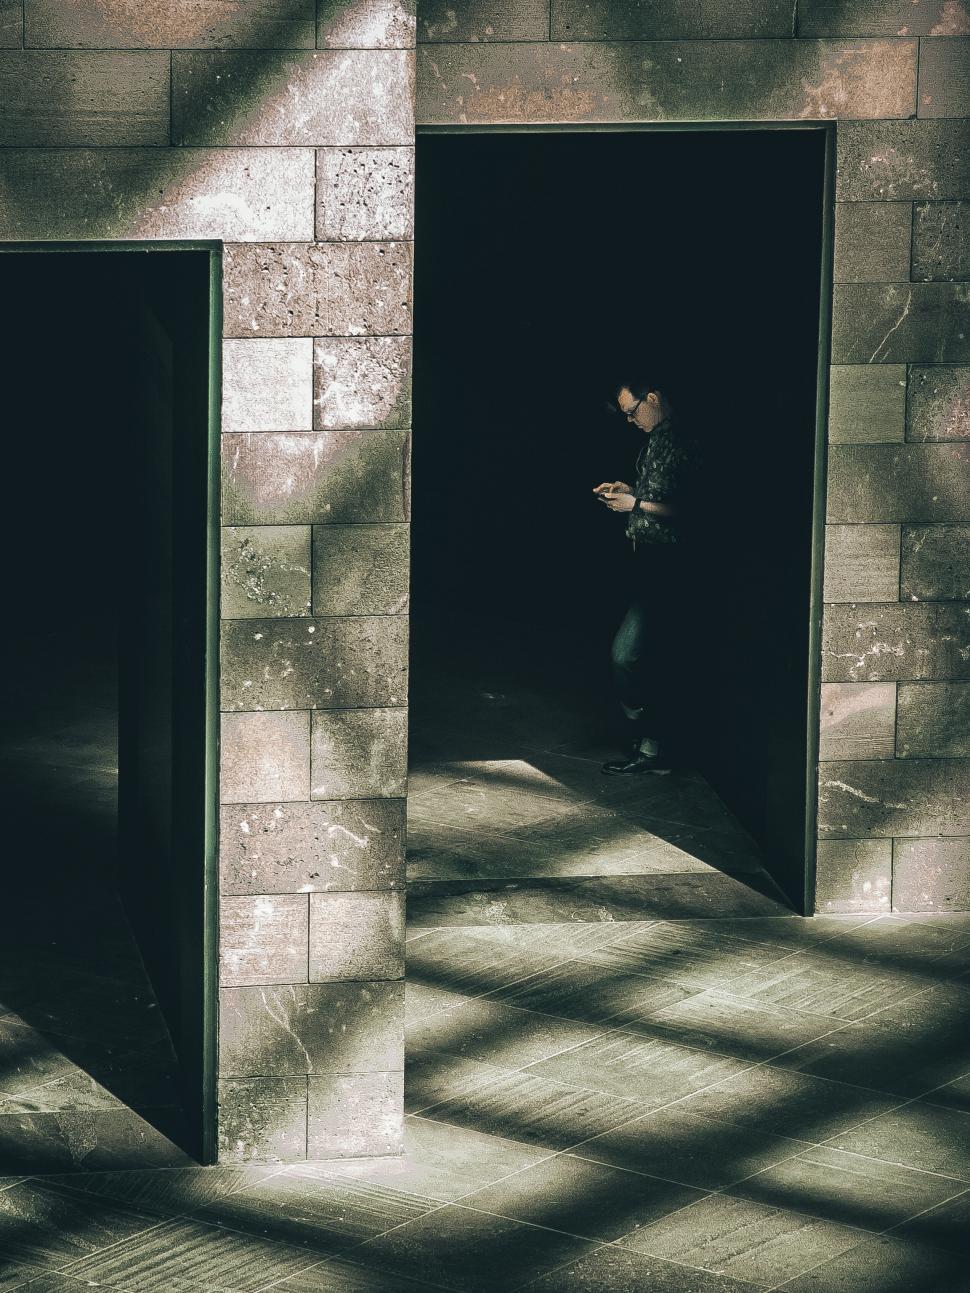 Free Image of Shadowy figure in building doorway 